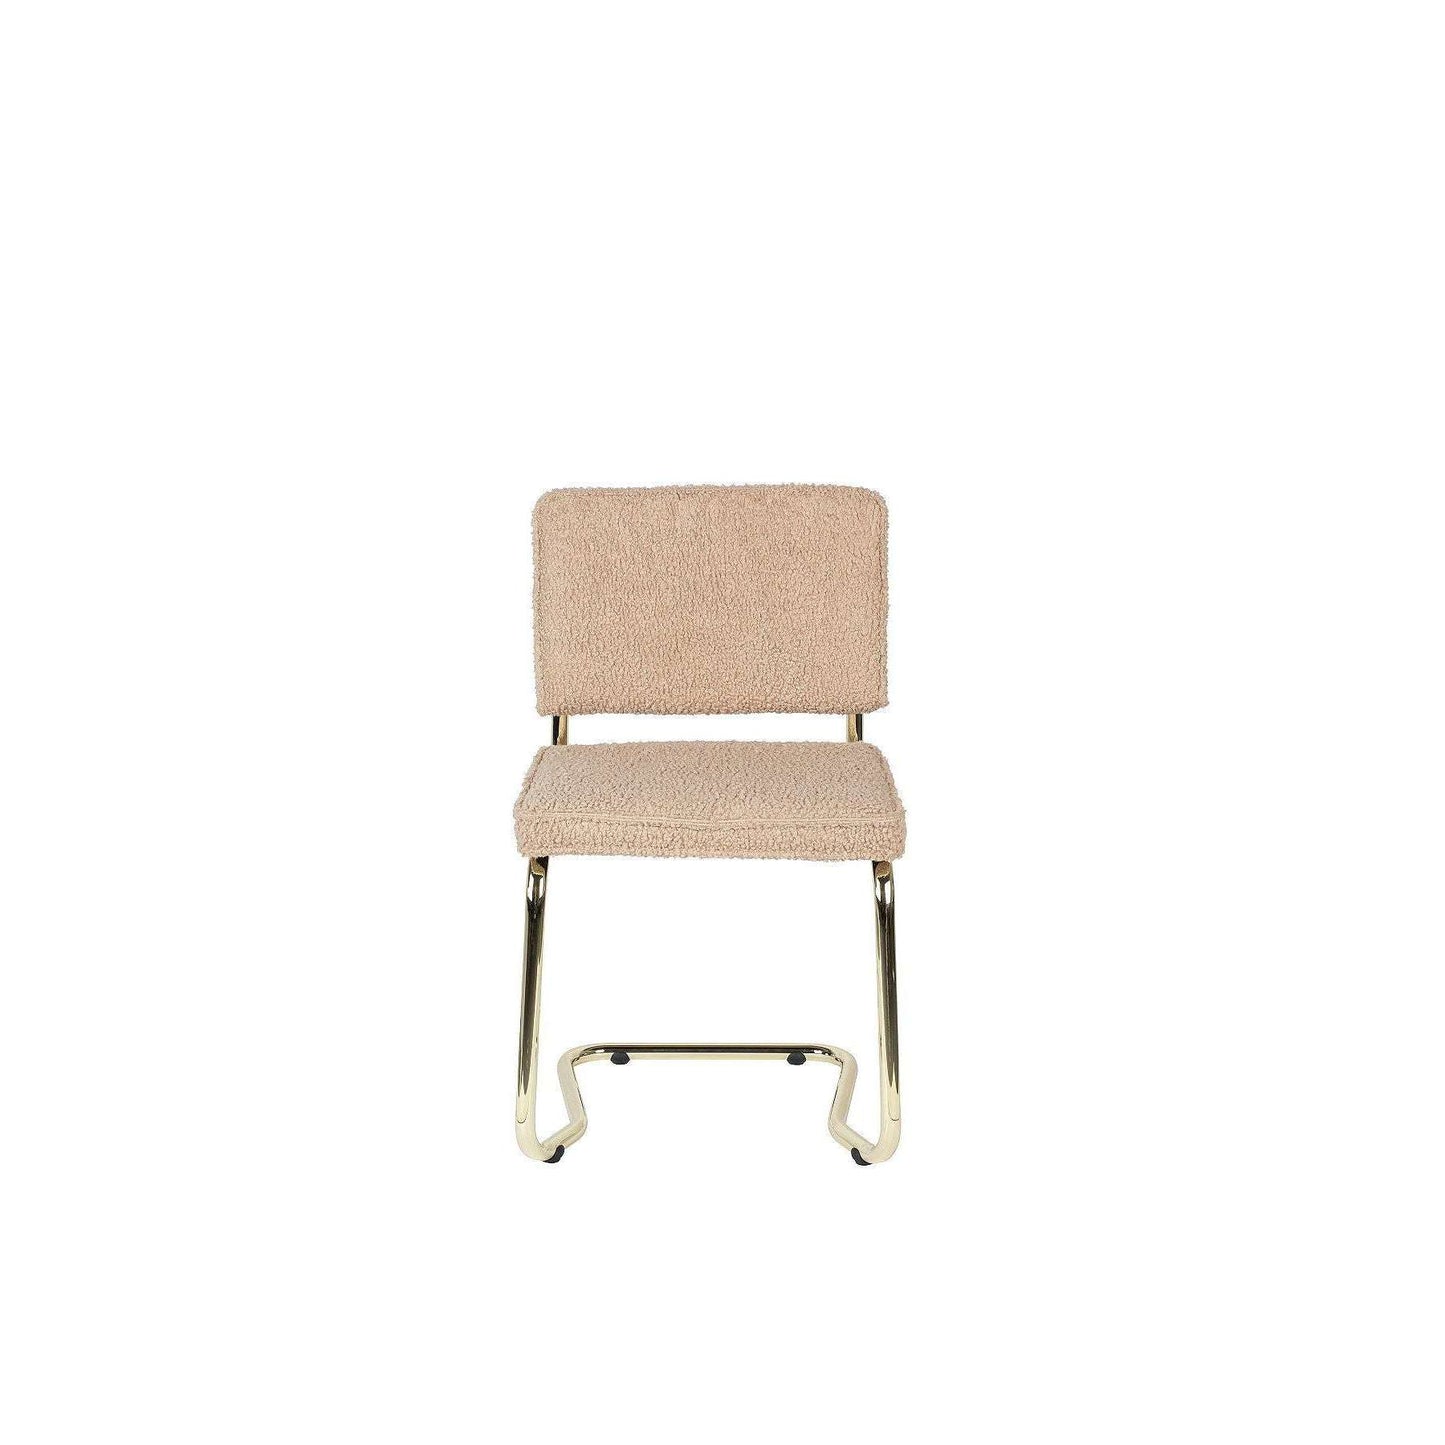 Zuiver stoel teddy kink roze 48 x 48 x 85 cm